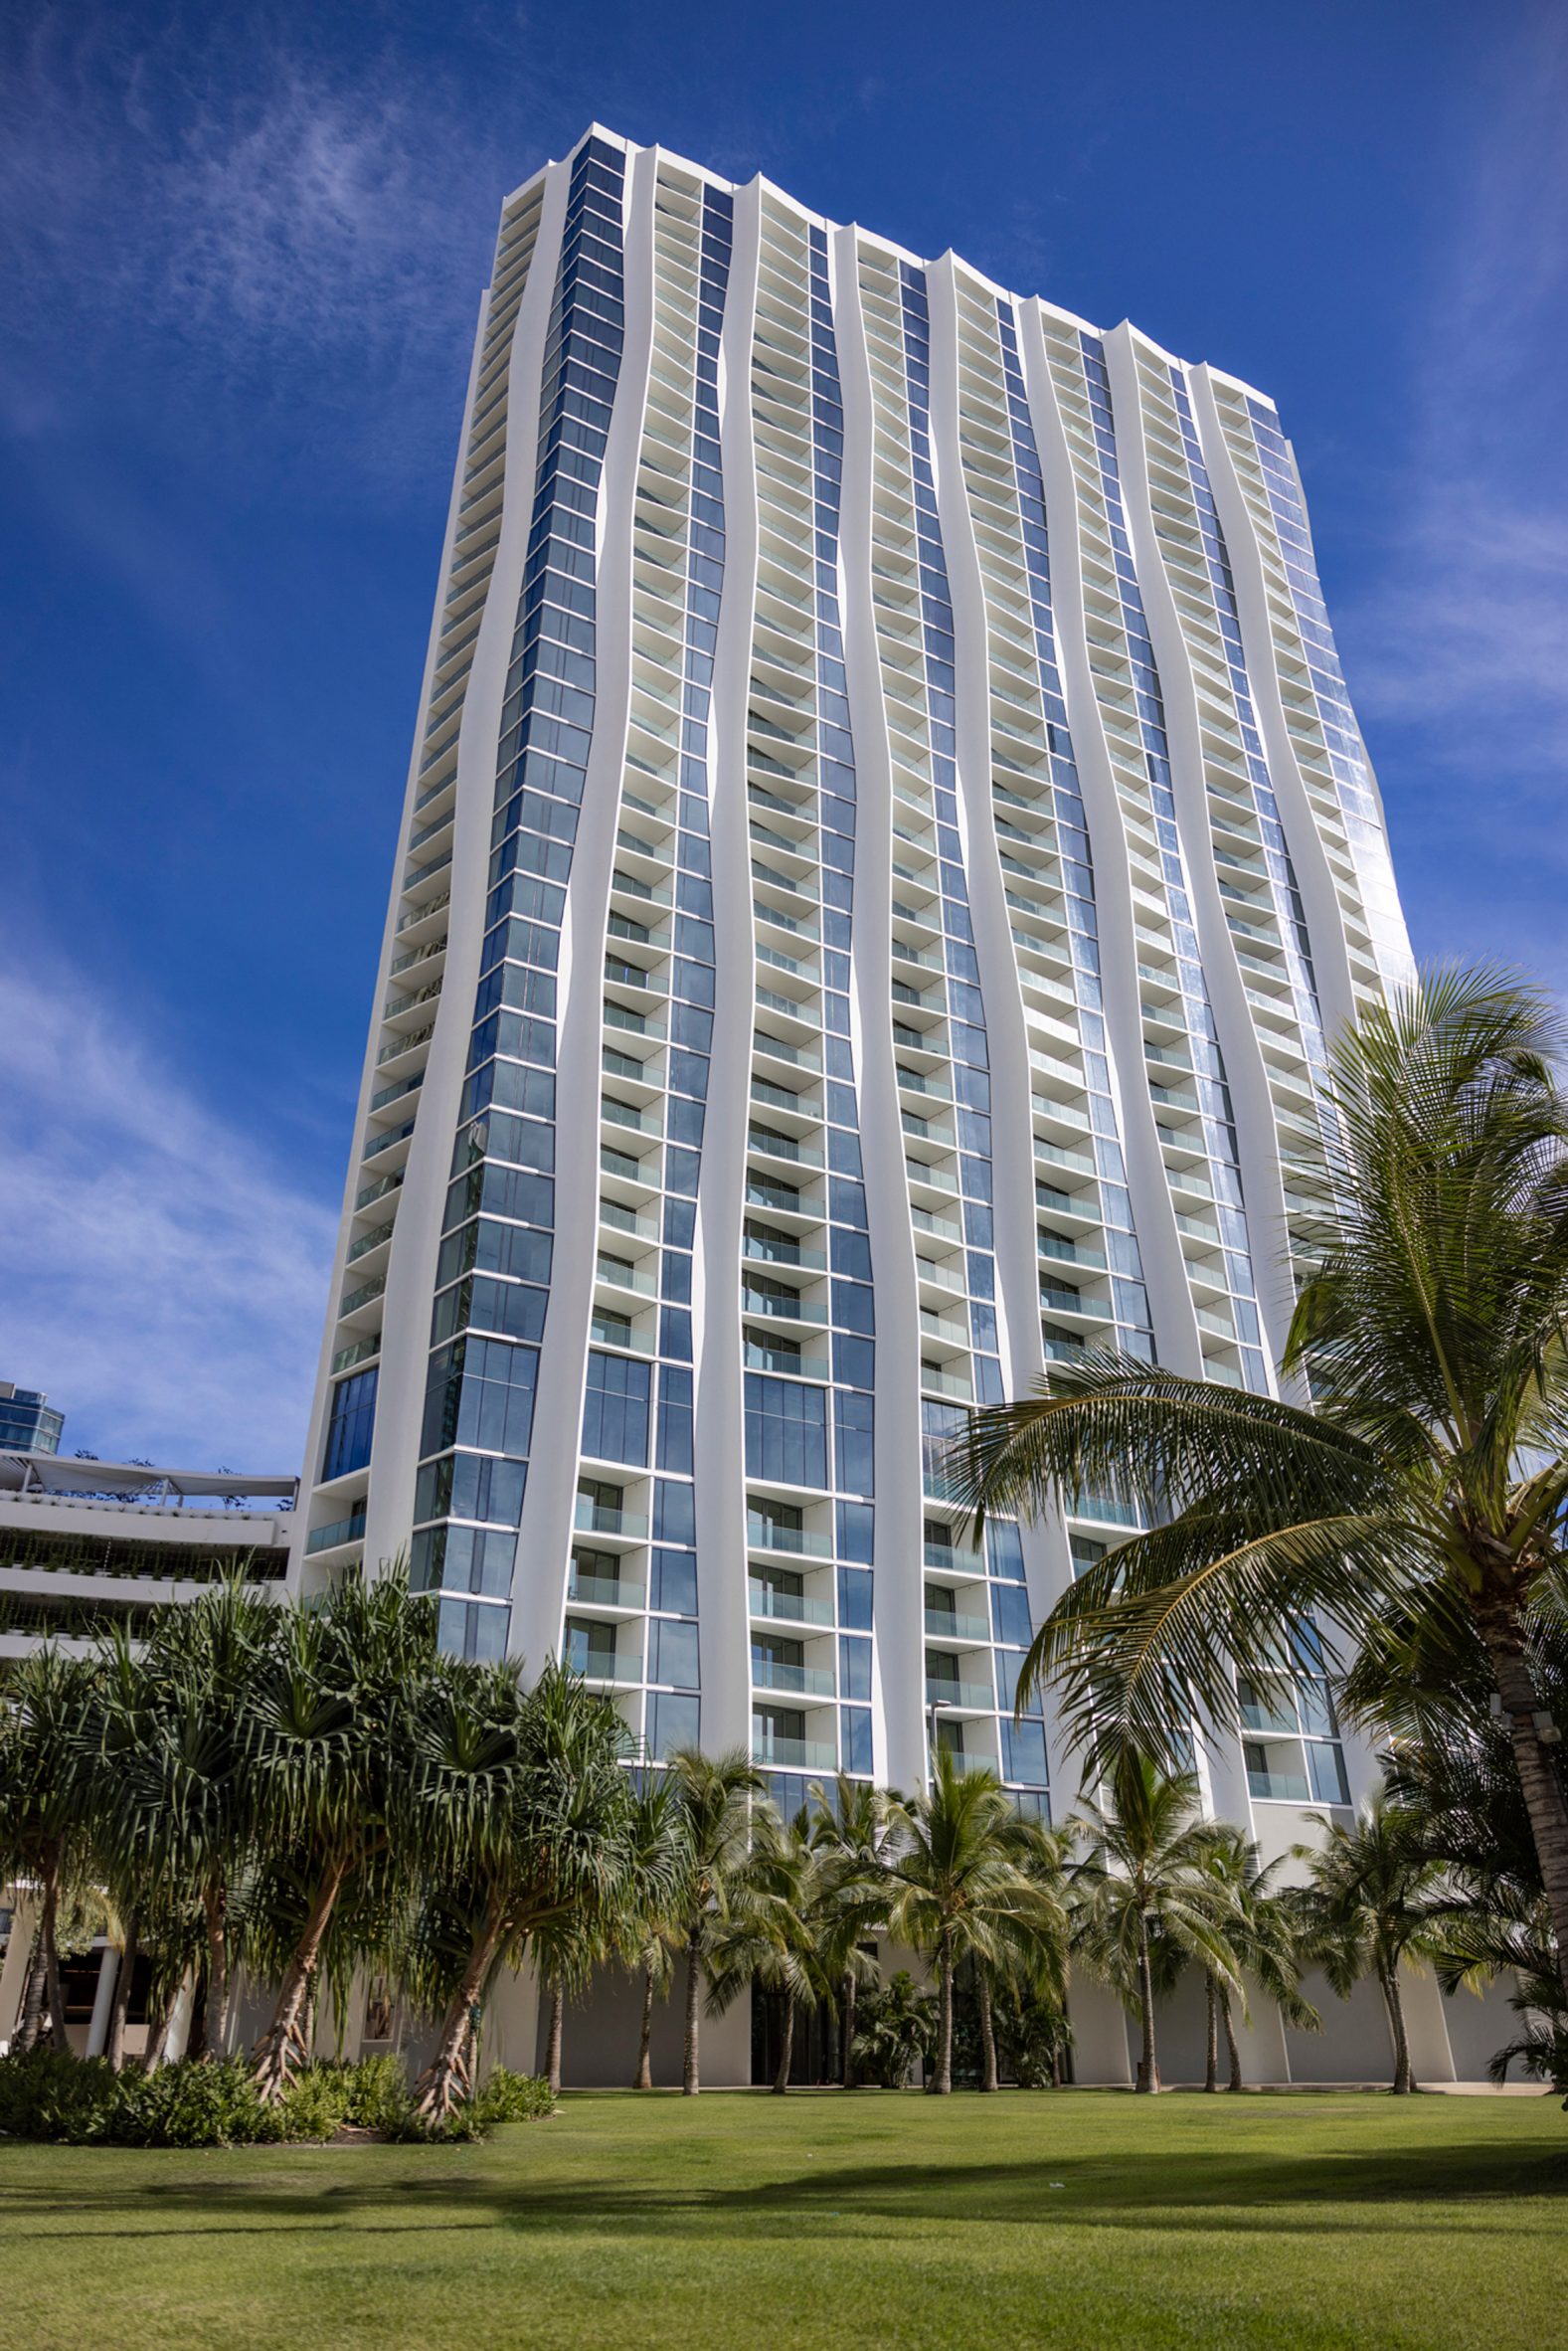 Studio Gang wraps Hawaii skyscraper in sugar cane-informed facade